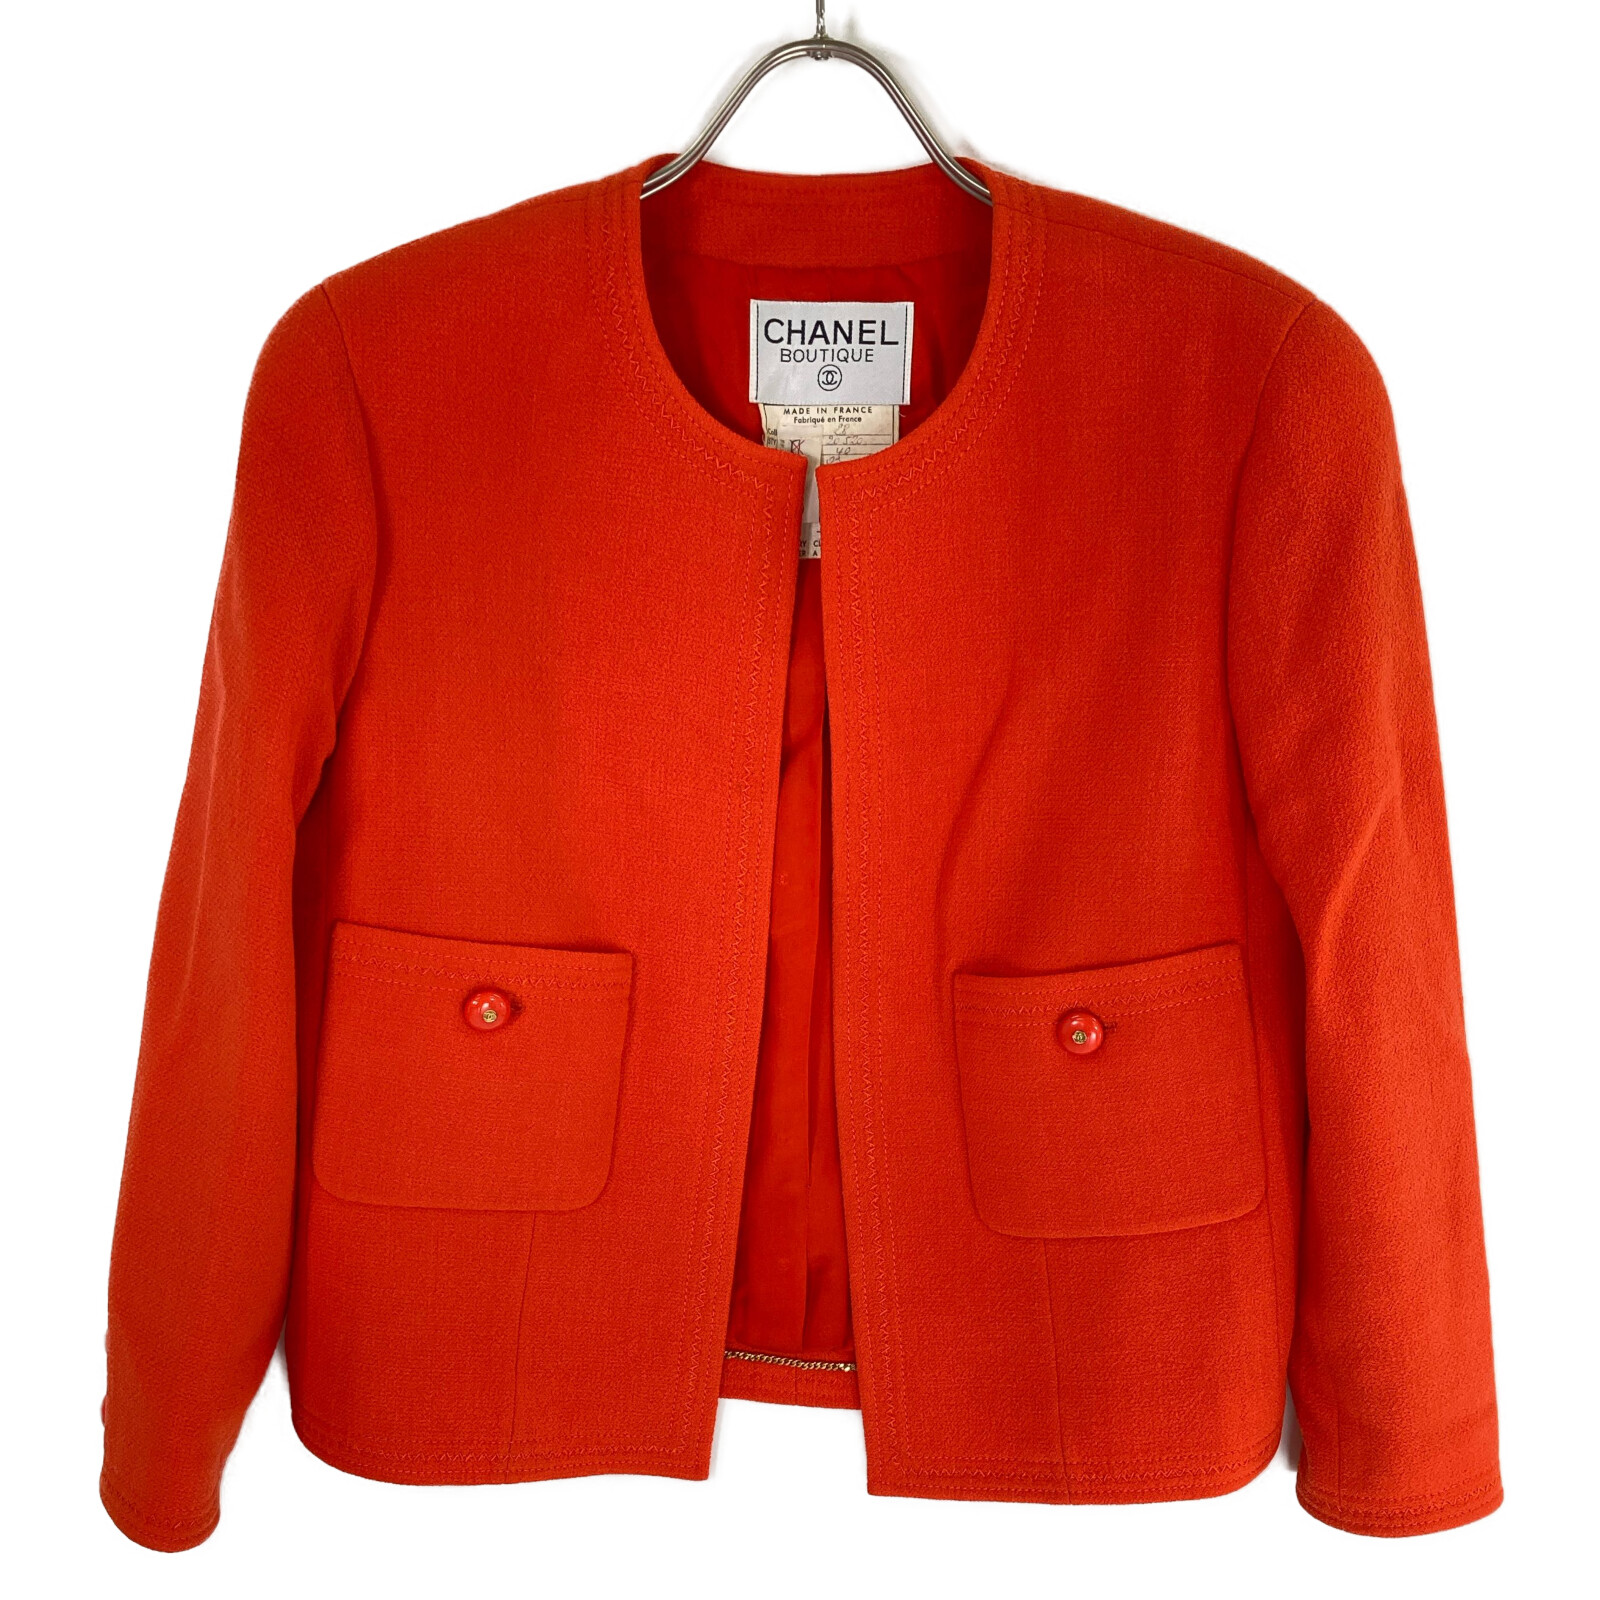  прекрасный товар / внутренний стандартный CHANEL Chanel 20520 шерсть no color жакет / узкая юбка костюм 40 orange женский 